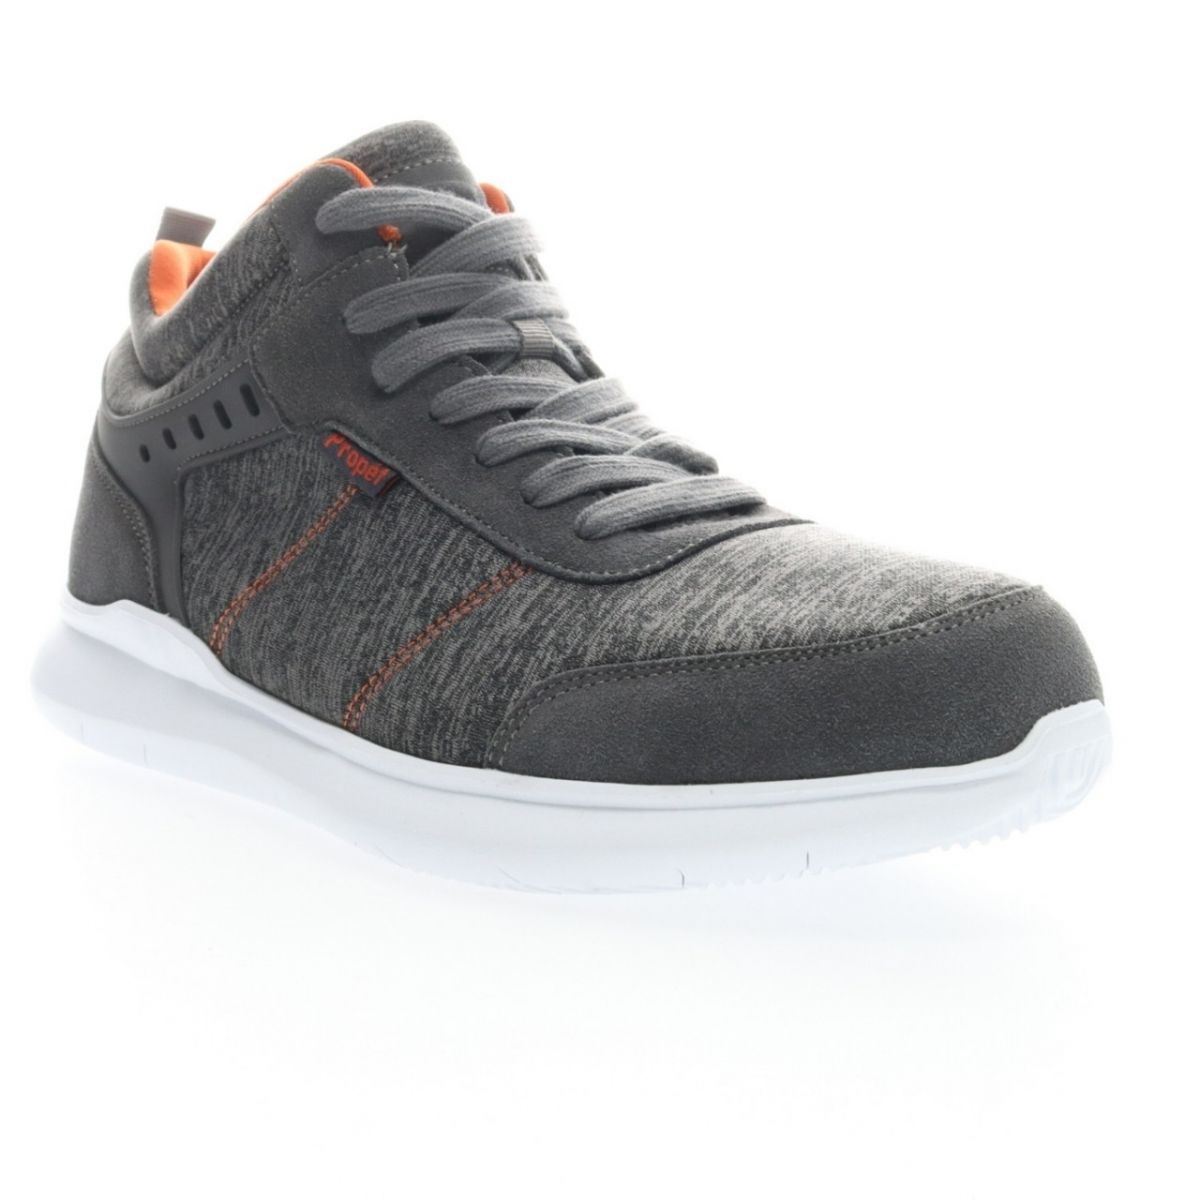 Propet Men's Viator Hi Sneaker Grey/Orange - MAA112MGOR Grey/orange - Grey/orange, 10 X-Wide